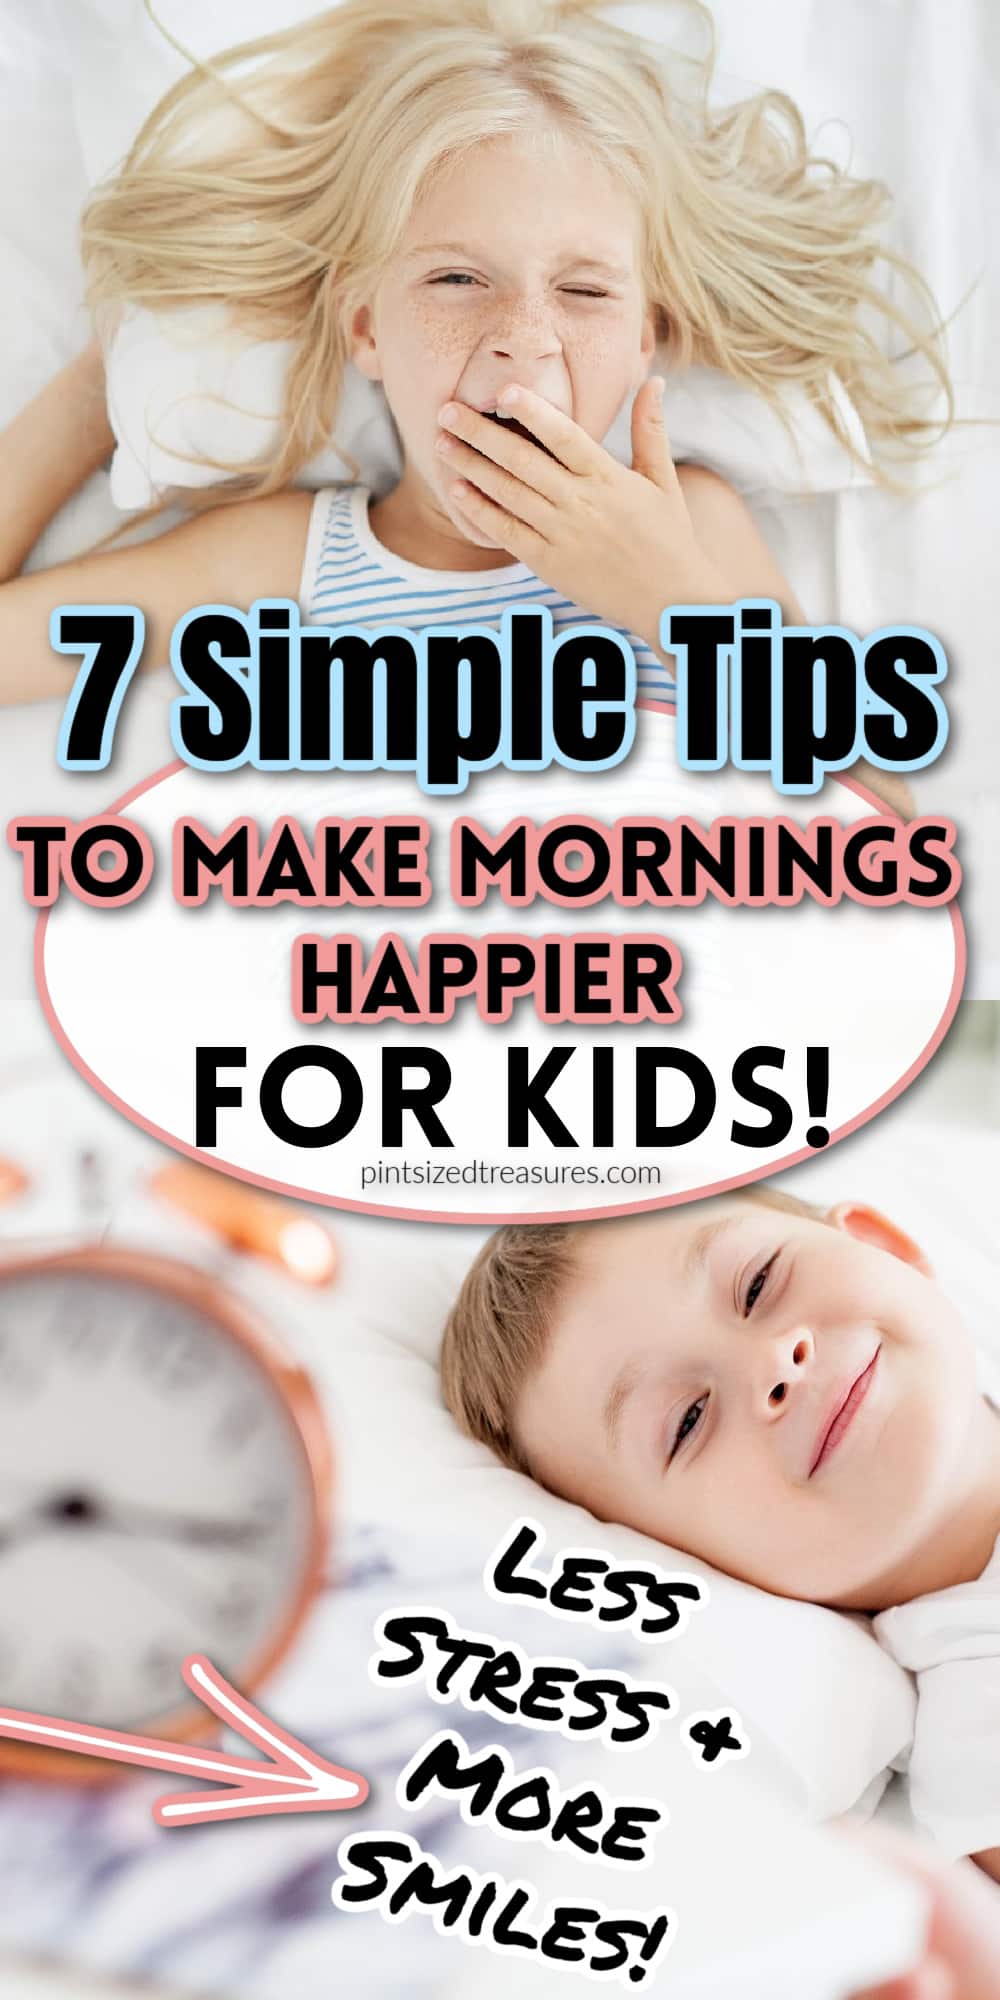 making mornings happier for kids